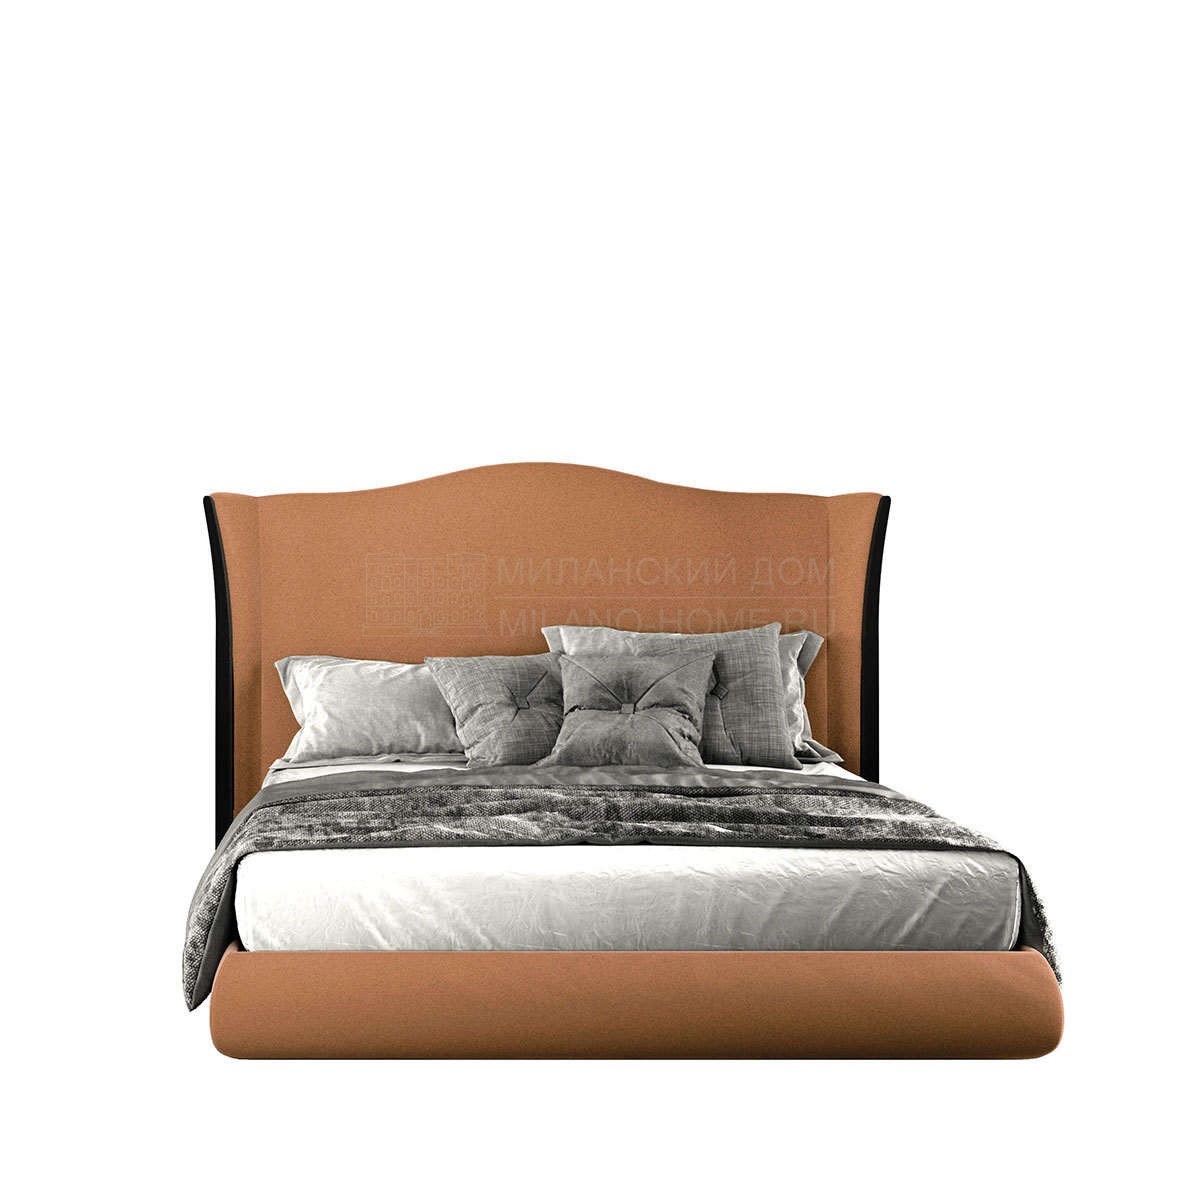 Кровать с мягким изголовьем Louren bed из Испании фабрики COLECCION ALEXANDRA